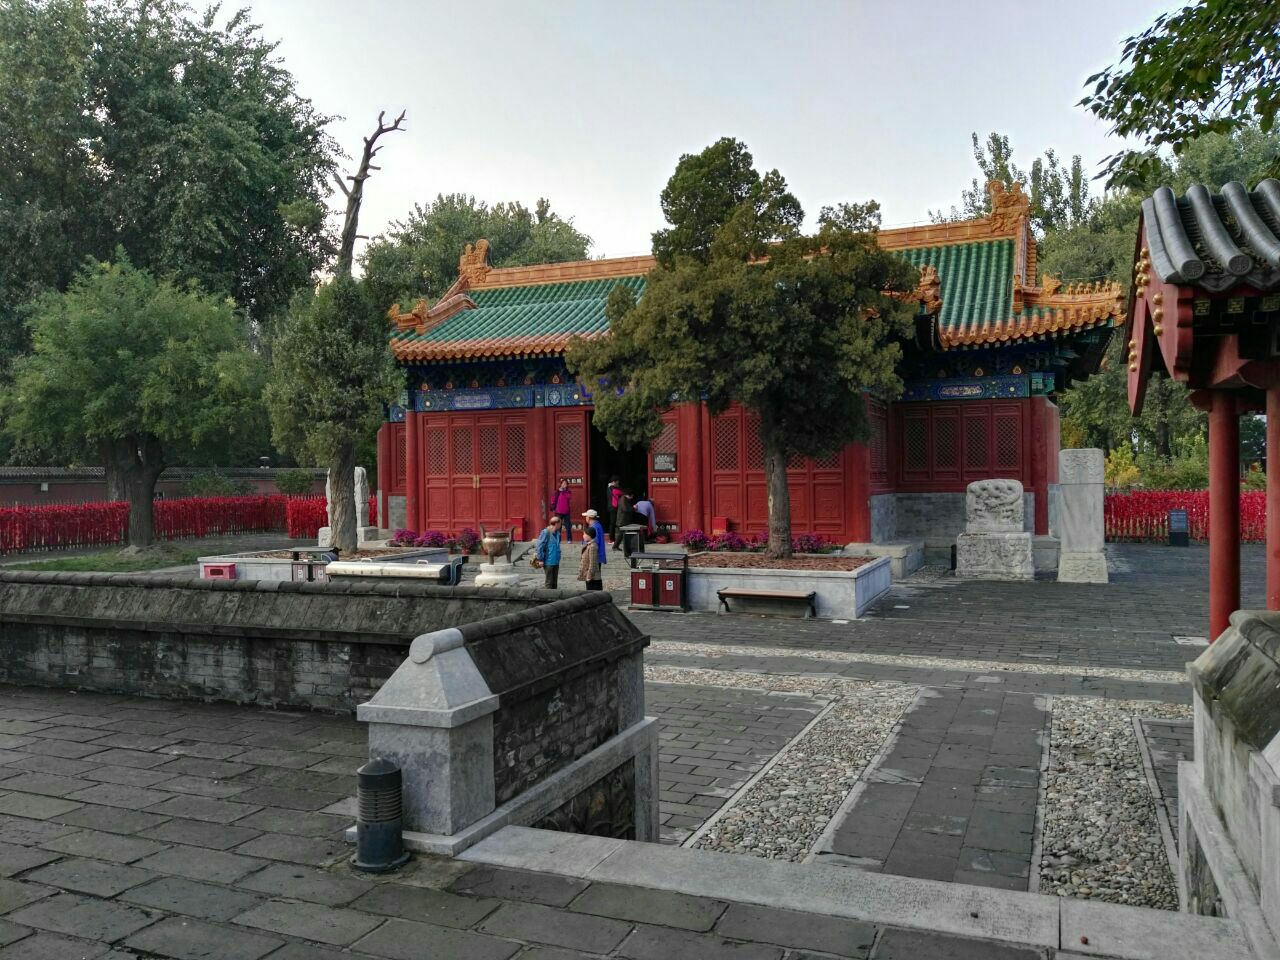 就在北京的奥林匹克公园的最南端有个庙就是著名的娘娘庙,这里几十年